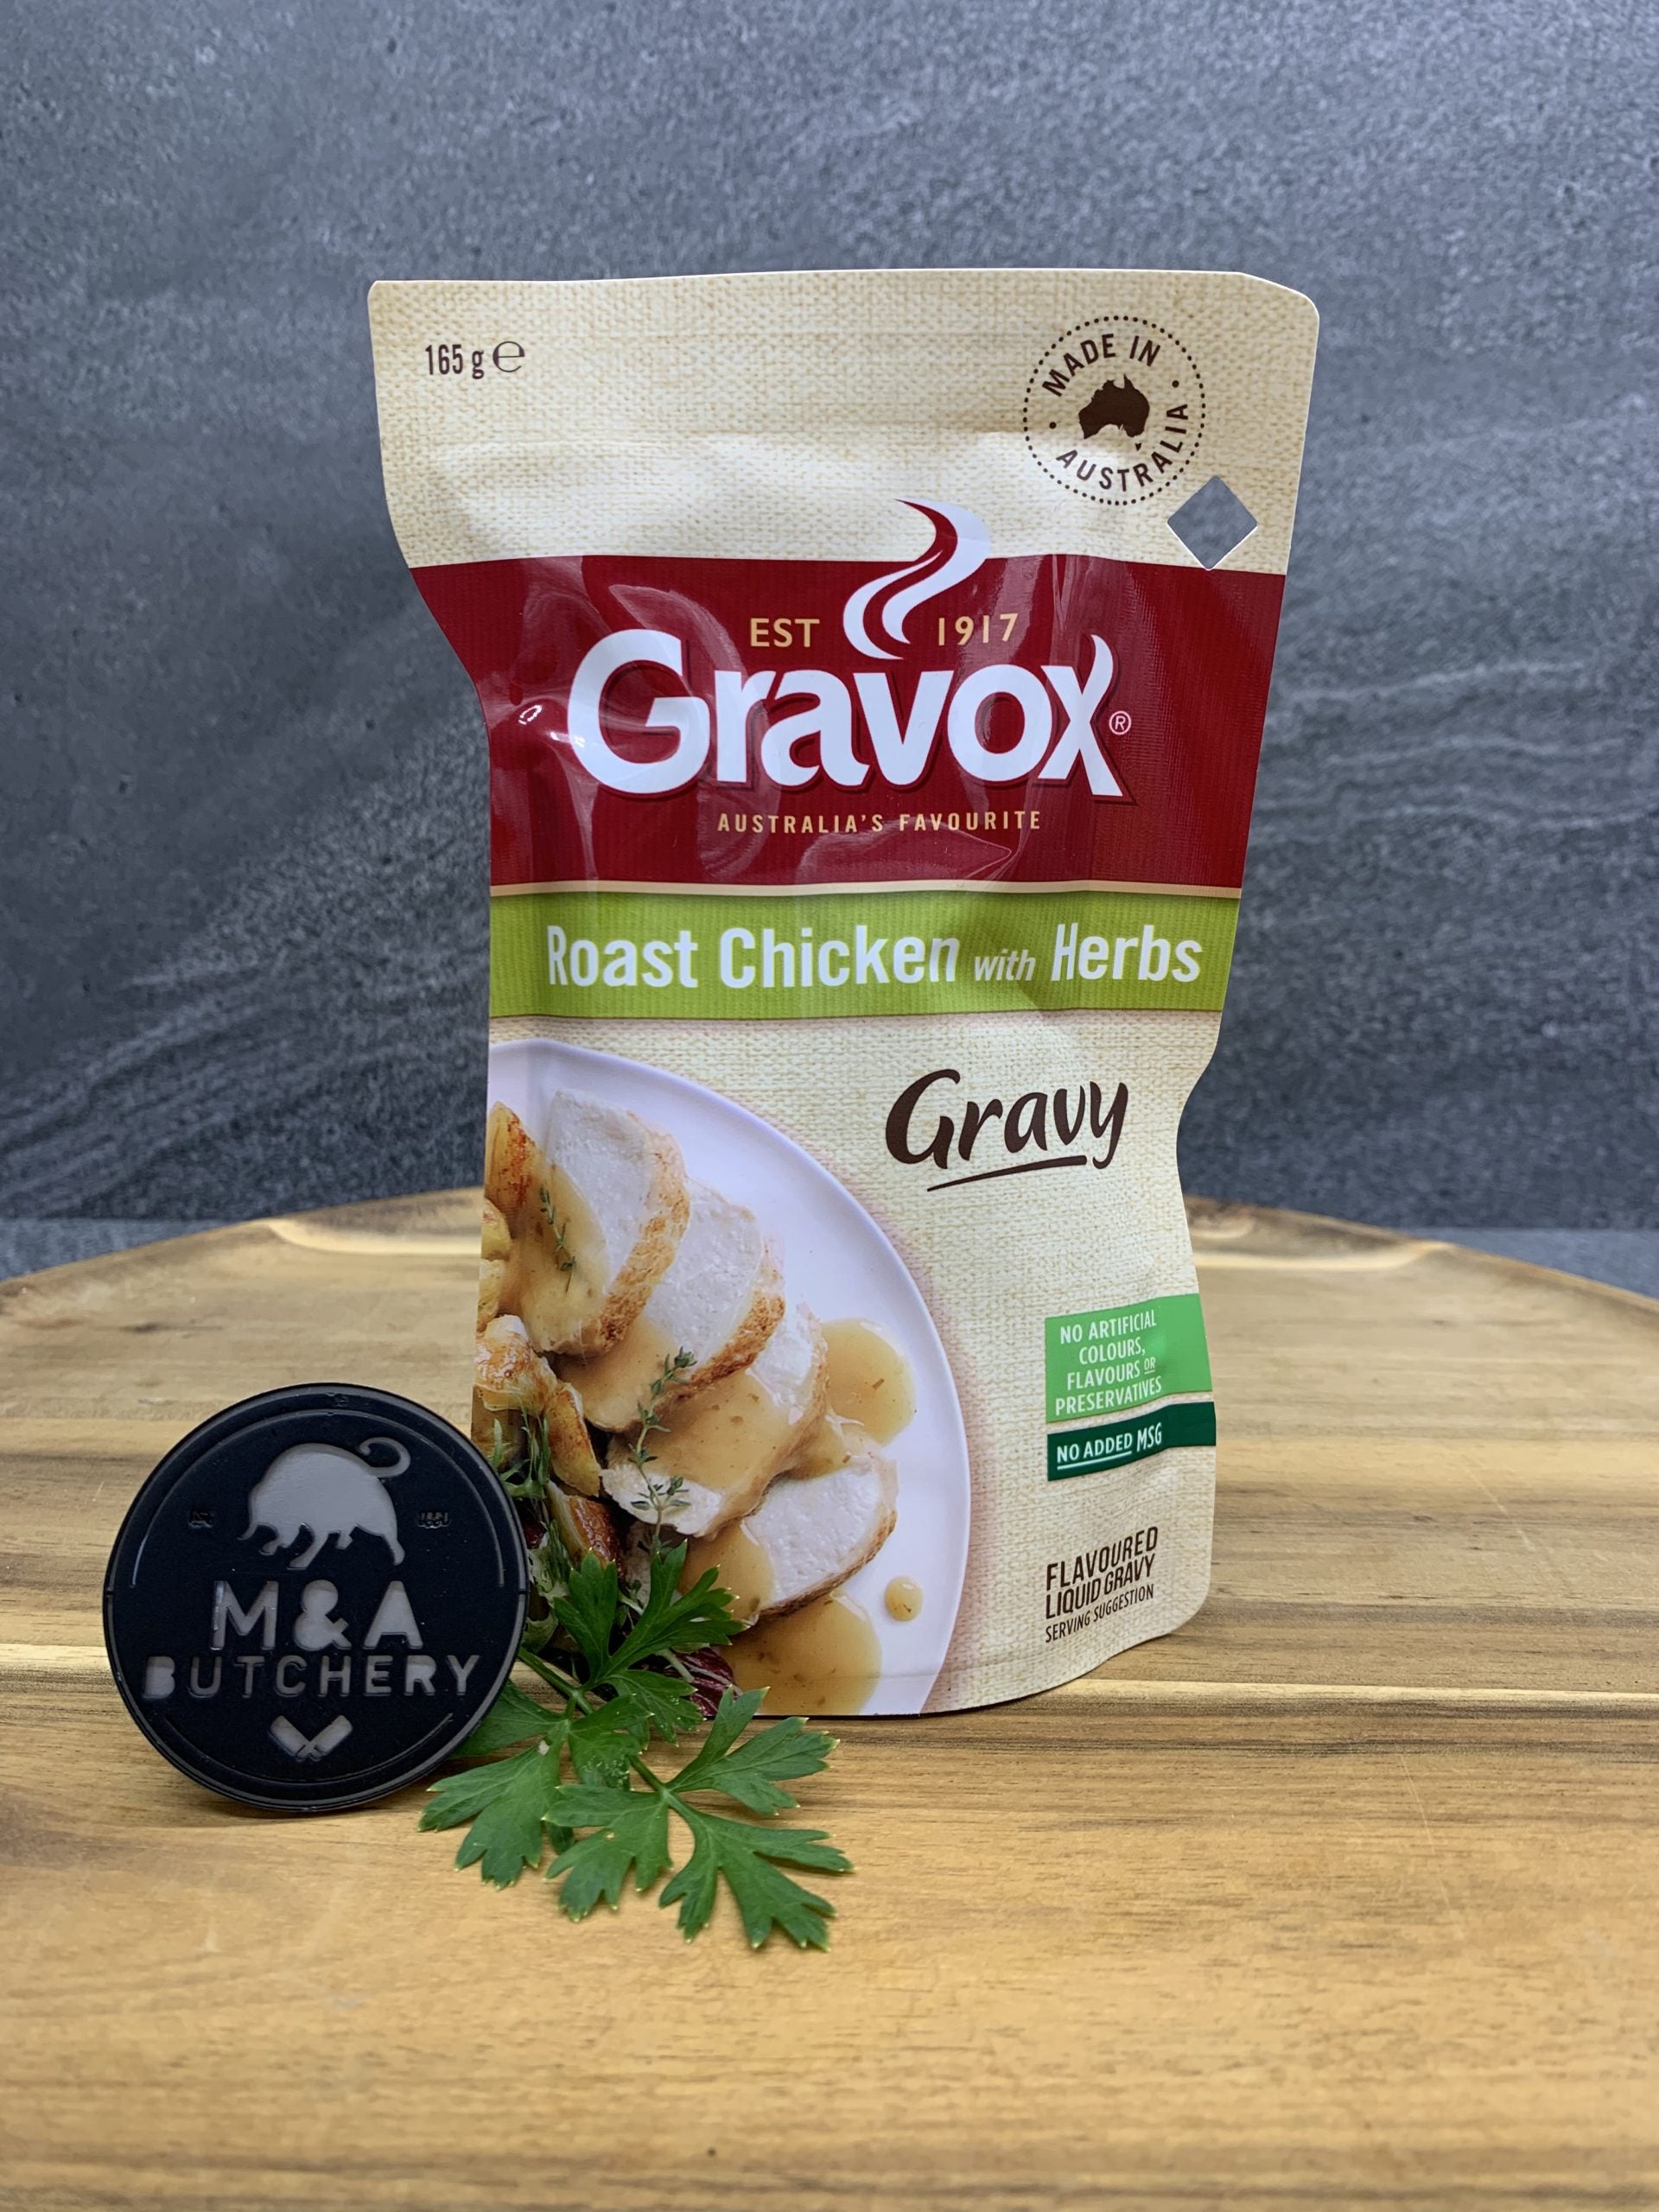 Gravox- Roast Chicken with Herbs Gravy 165g